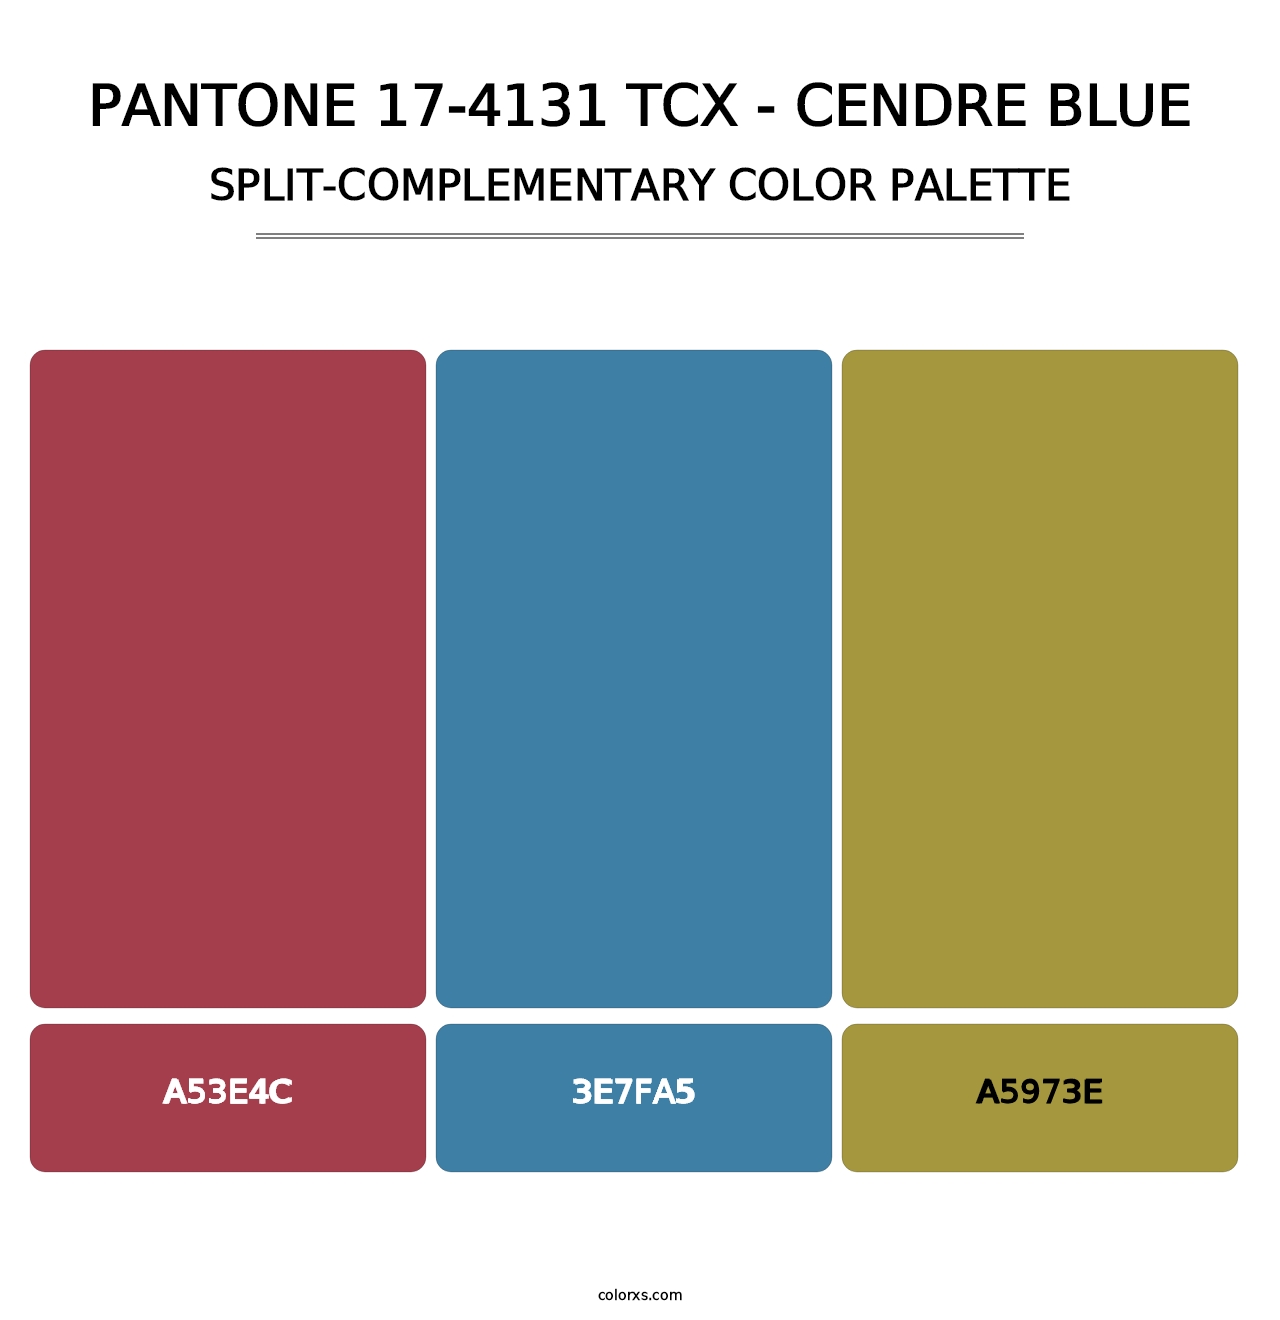 PANTONE 17-4131 TCX - Cendre Blue - Split-Complementary Color Palette